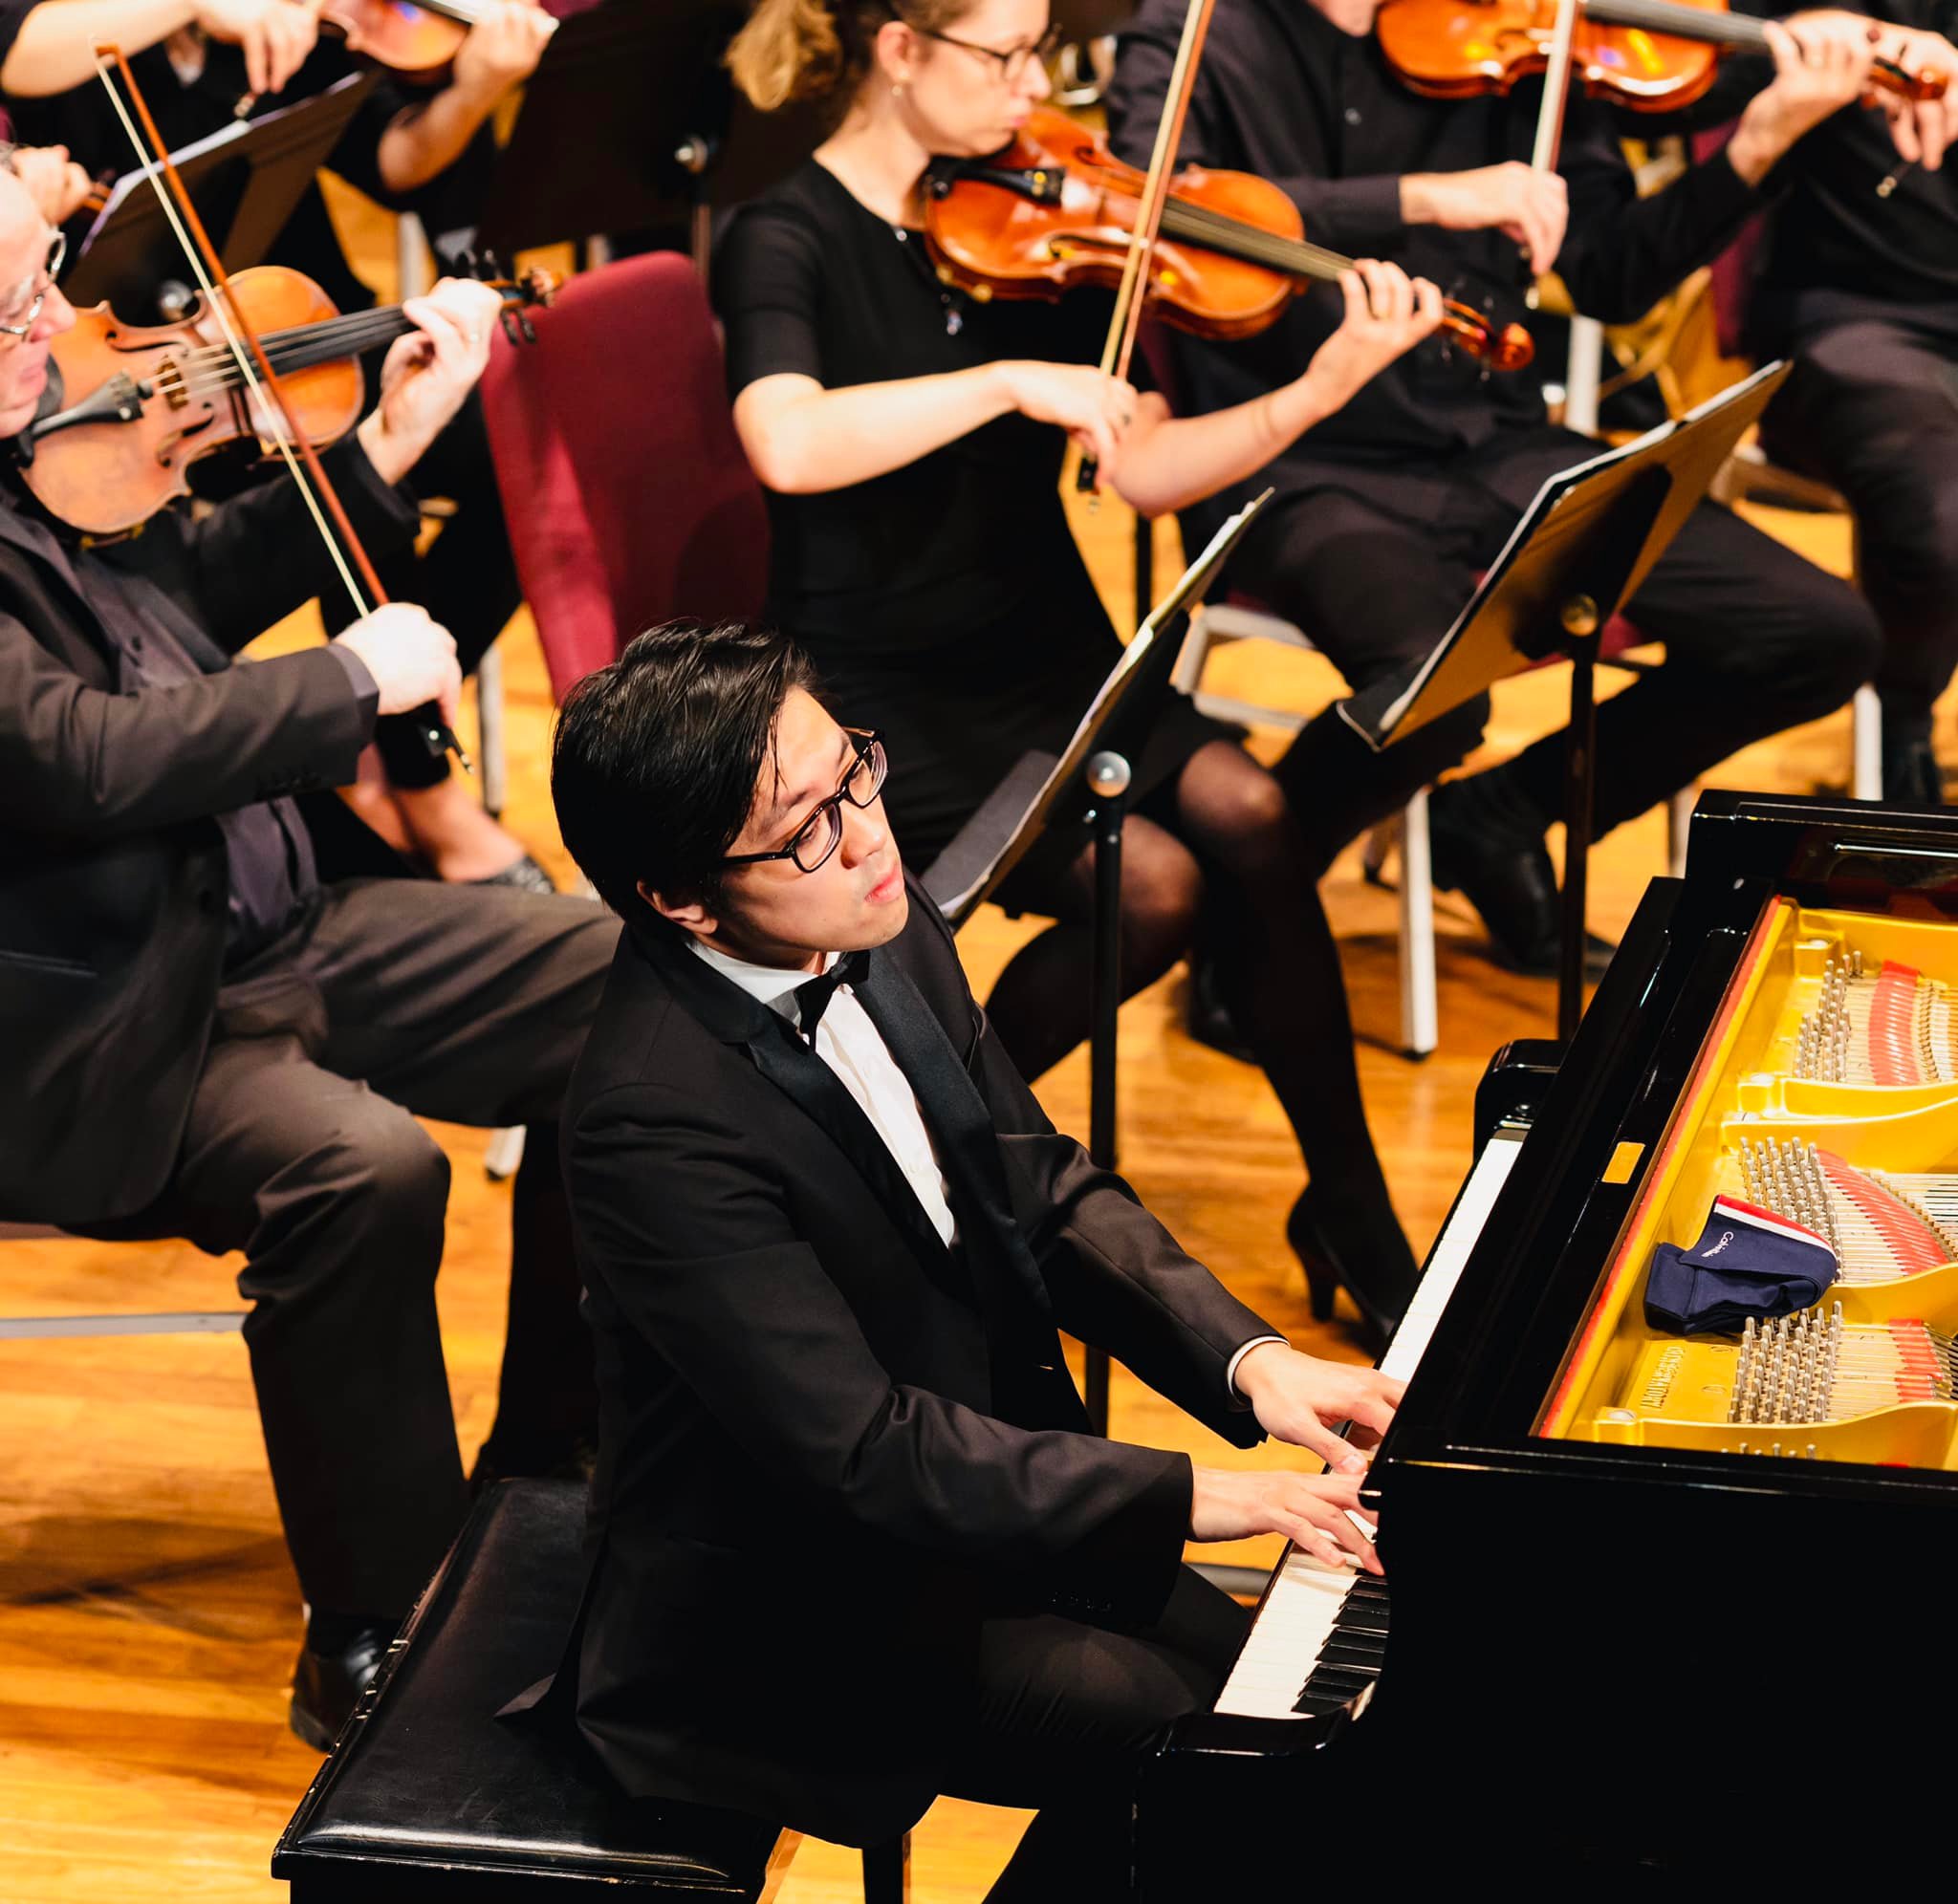 Dàn nhạc giao hưởng Balmain Sinfonia cùng nghệ sĩ dương cầm Lưu Hồng Quang đã có một buổi trình diễn xuất sắc, sáng suốt và đầy thấu cảm.